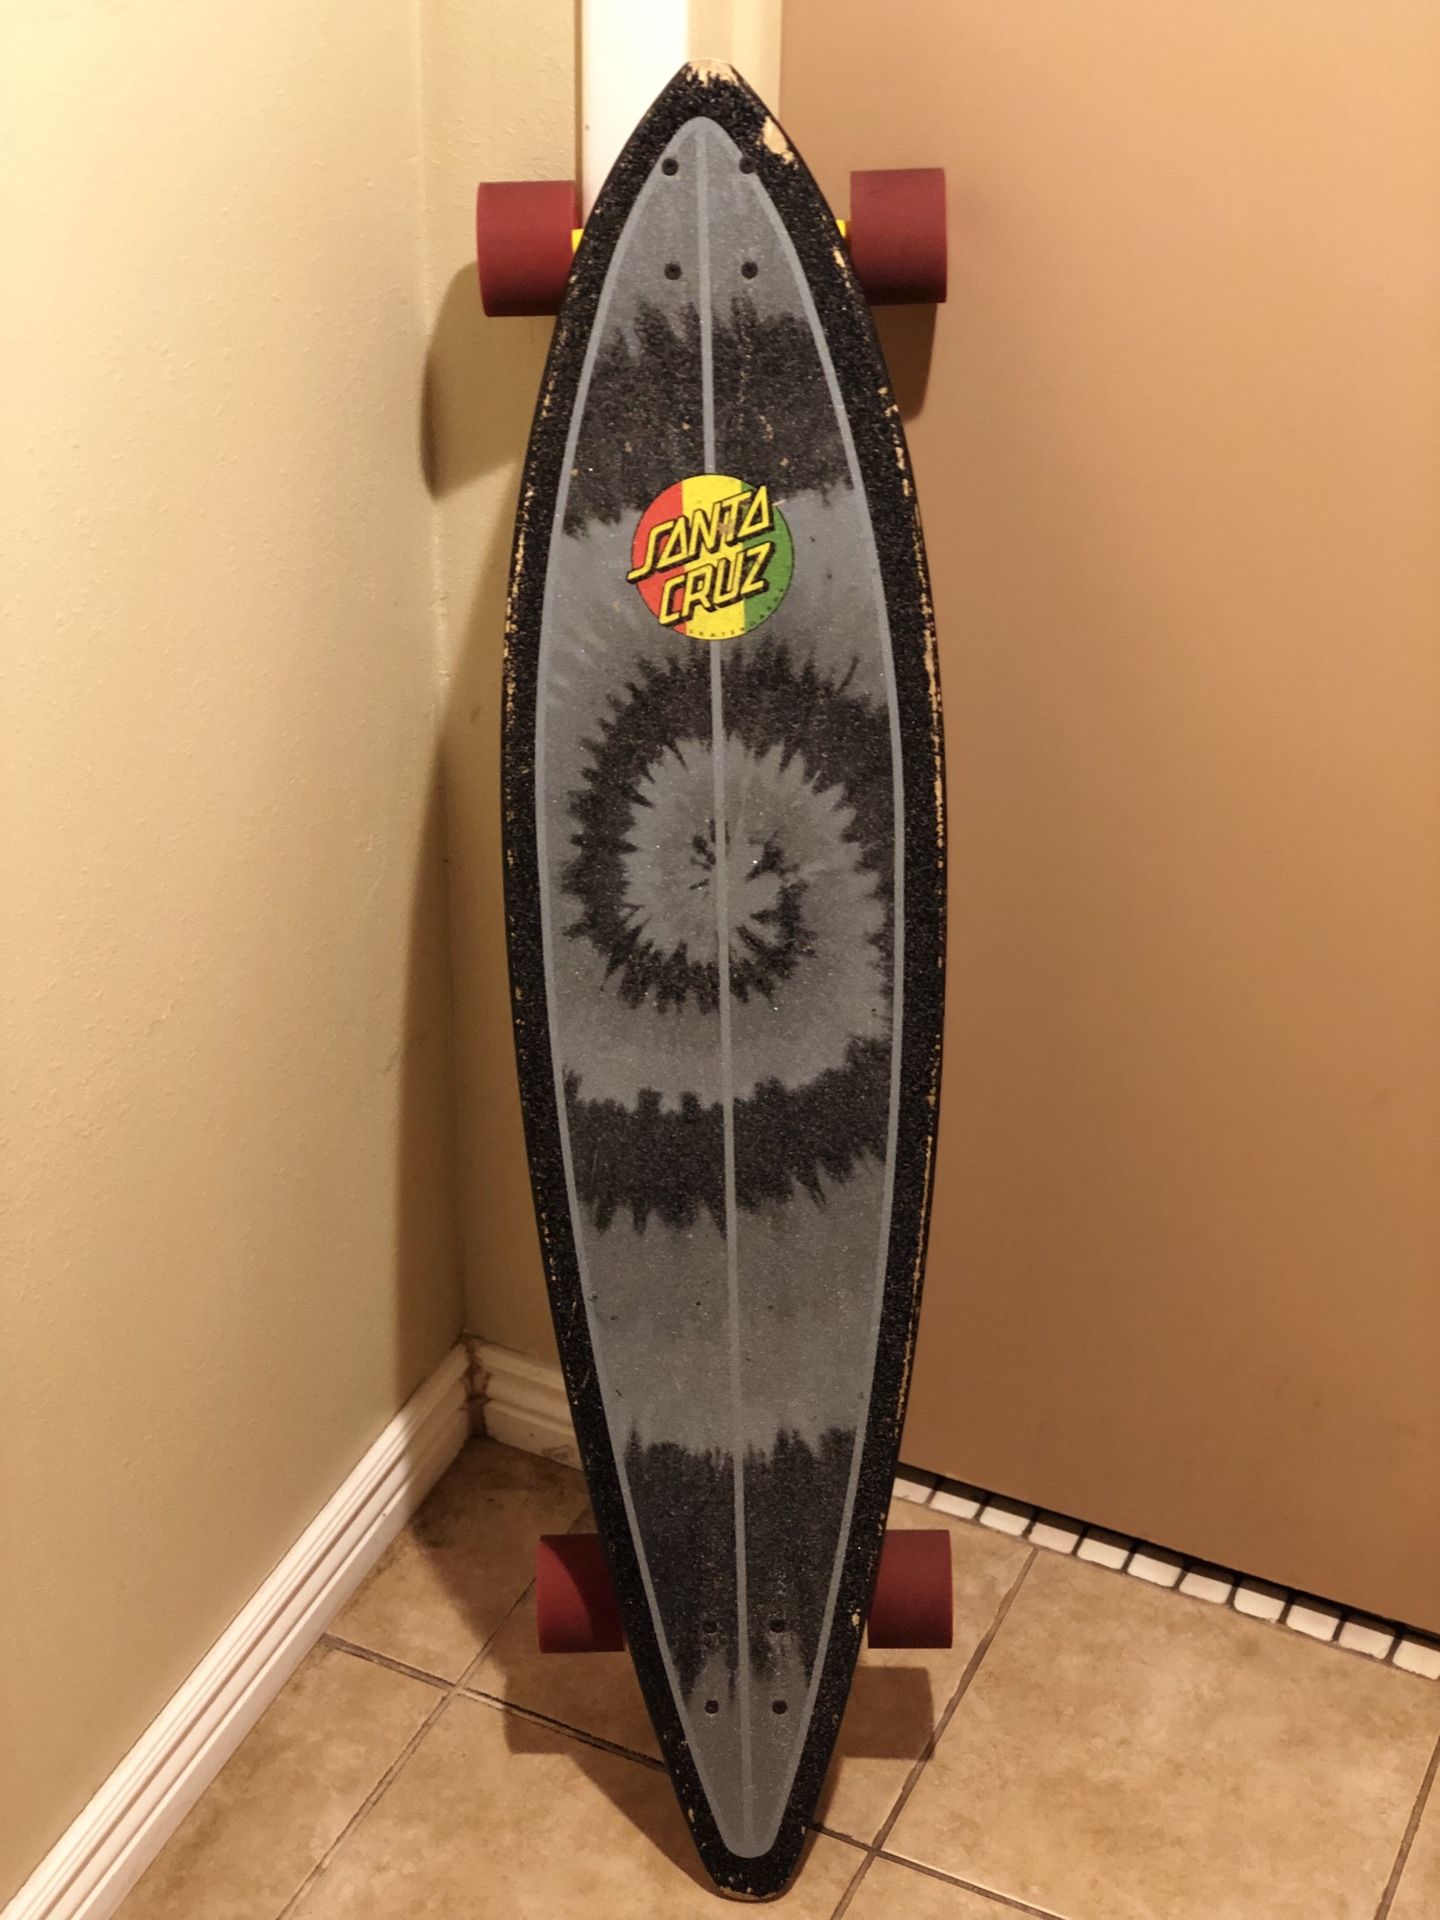 Santa Cruz long board